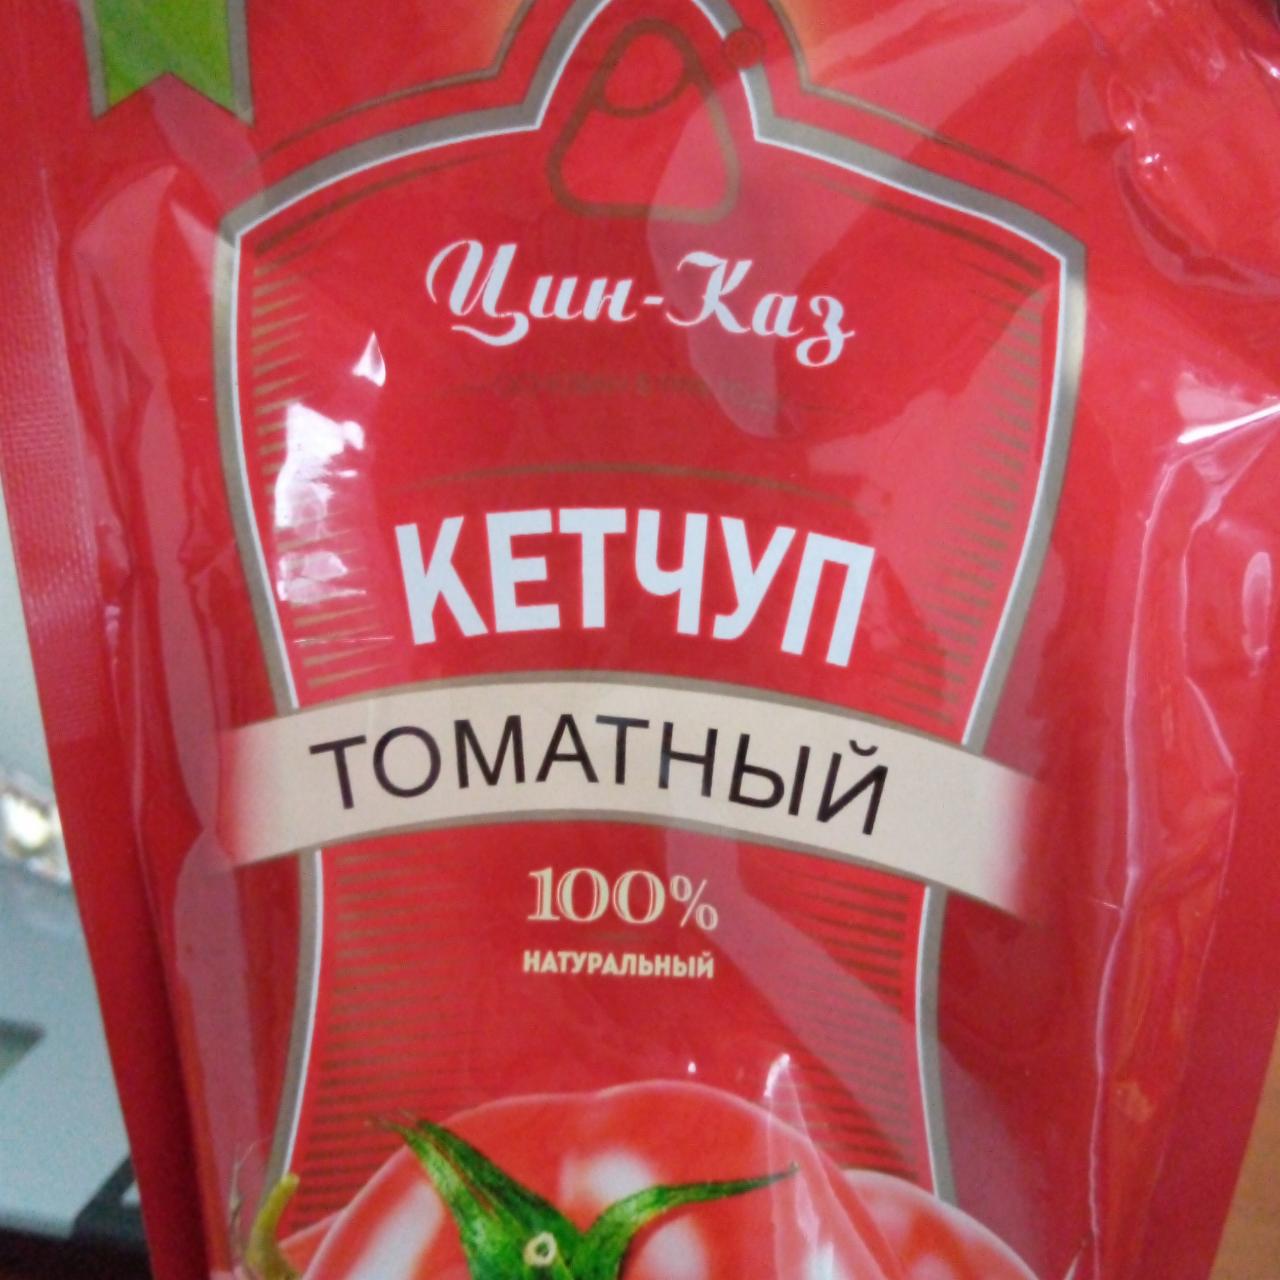 Фото - Кетчуп томатный Цин-каз